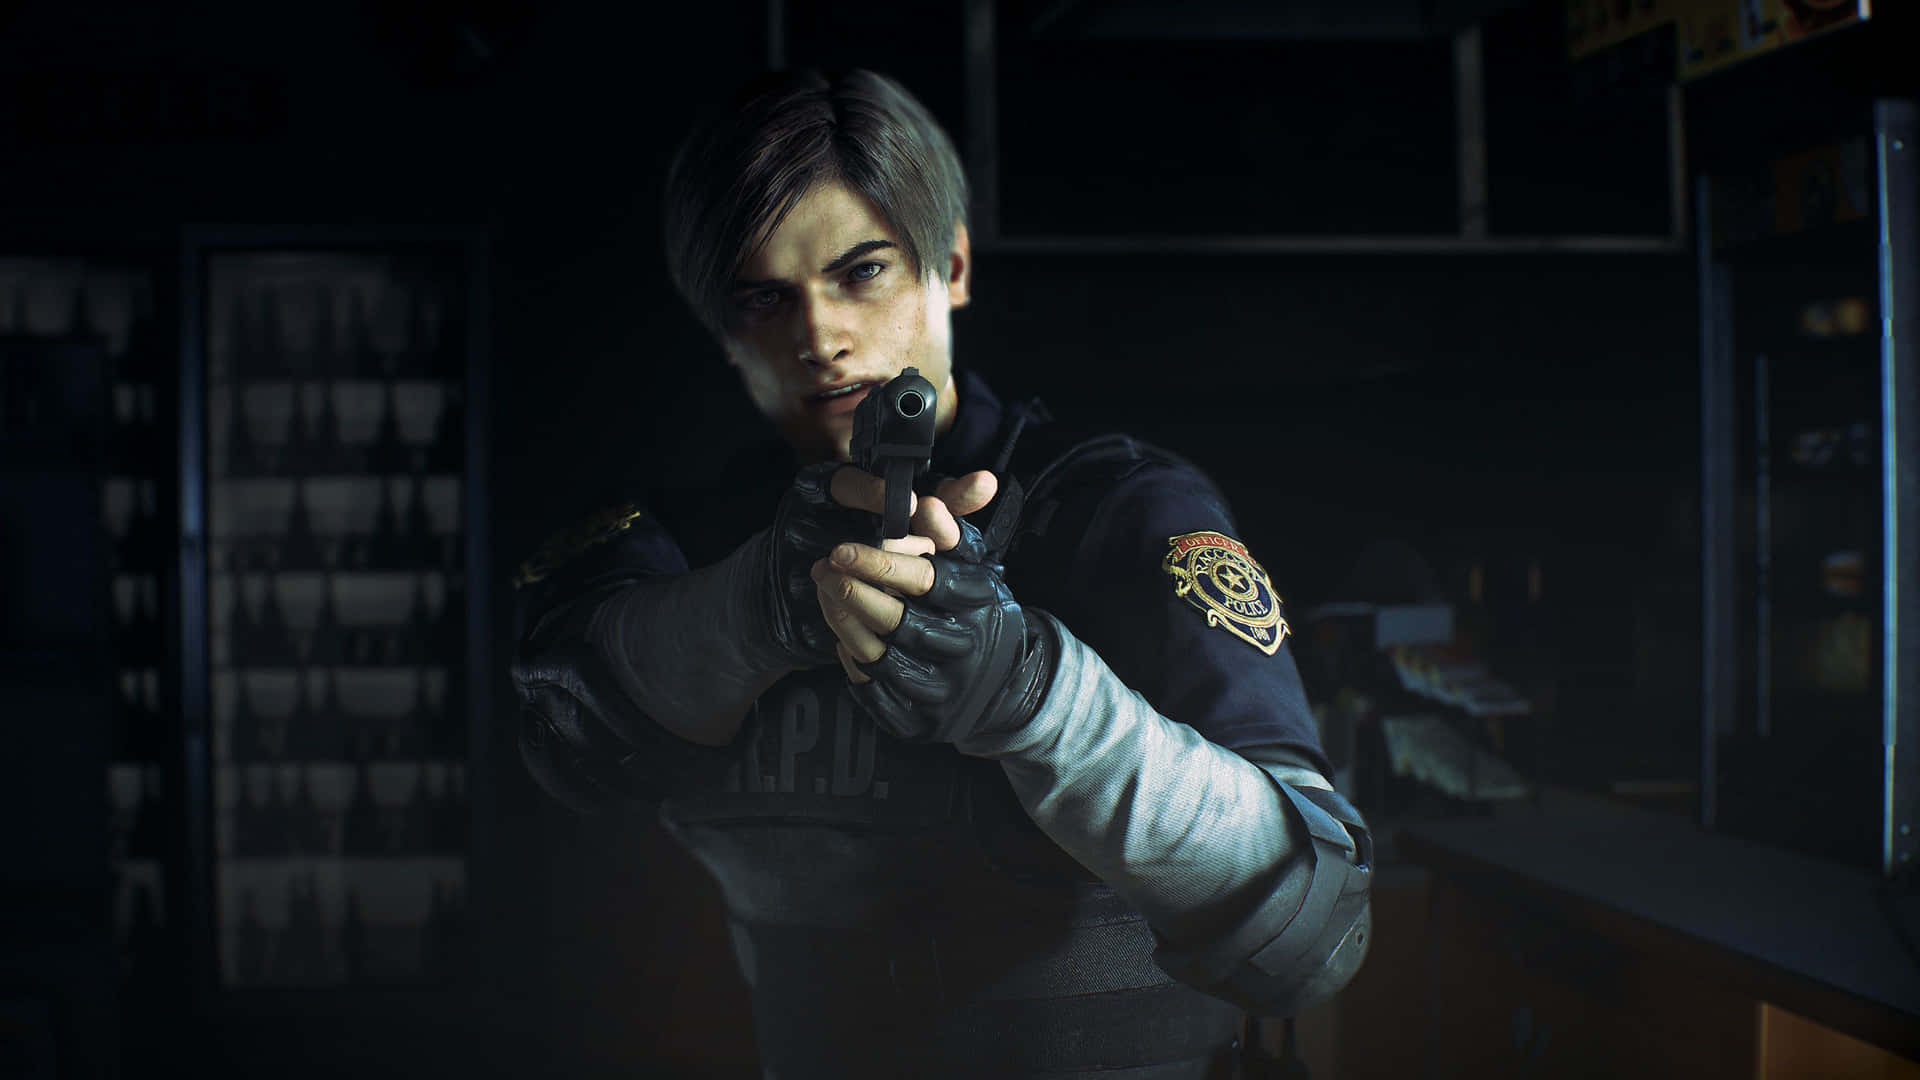 Leon Resident Evil 2 3840 X 2160 Wallpaper